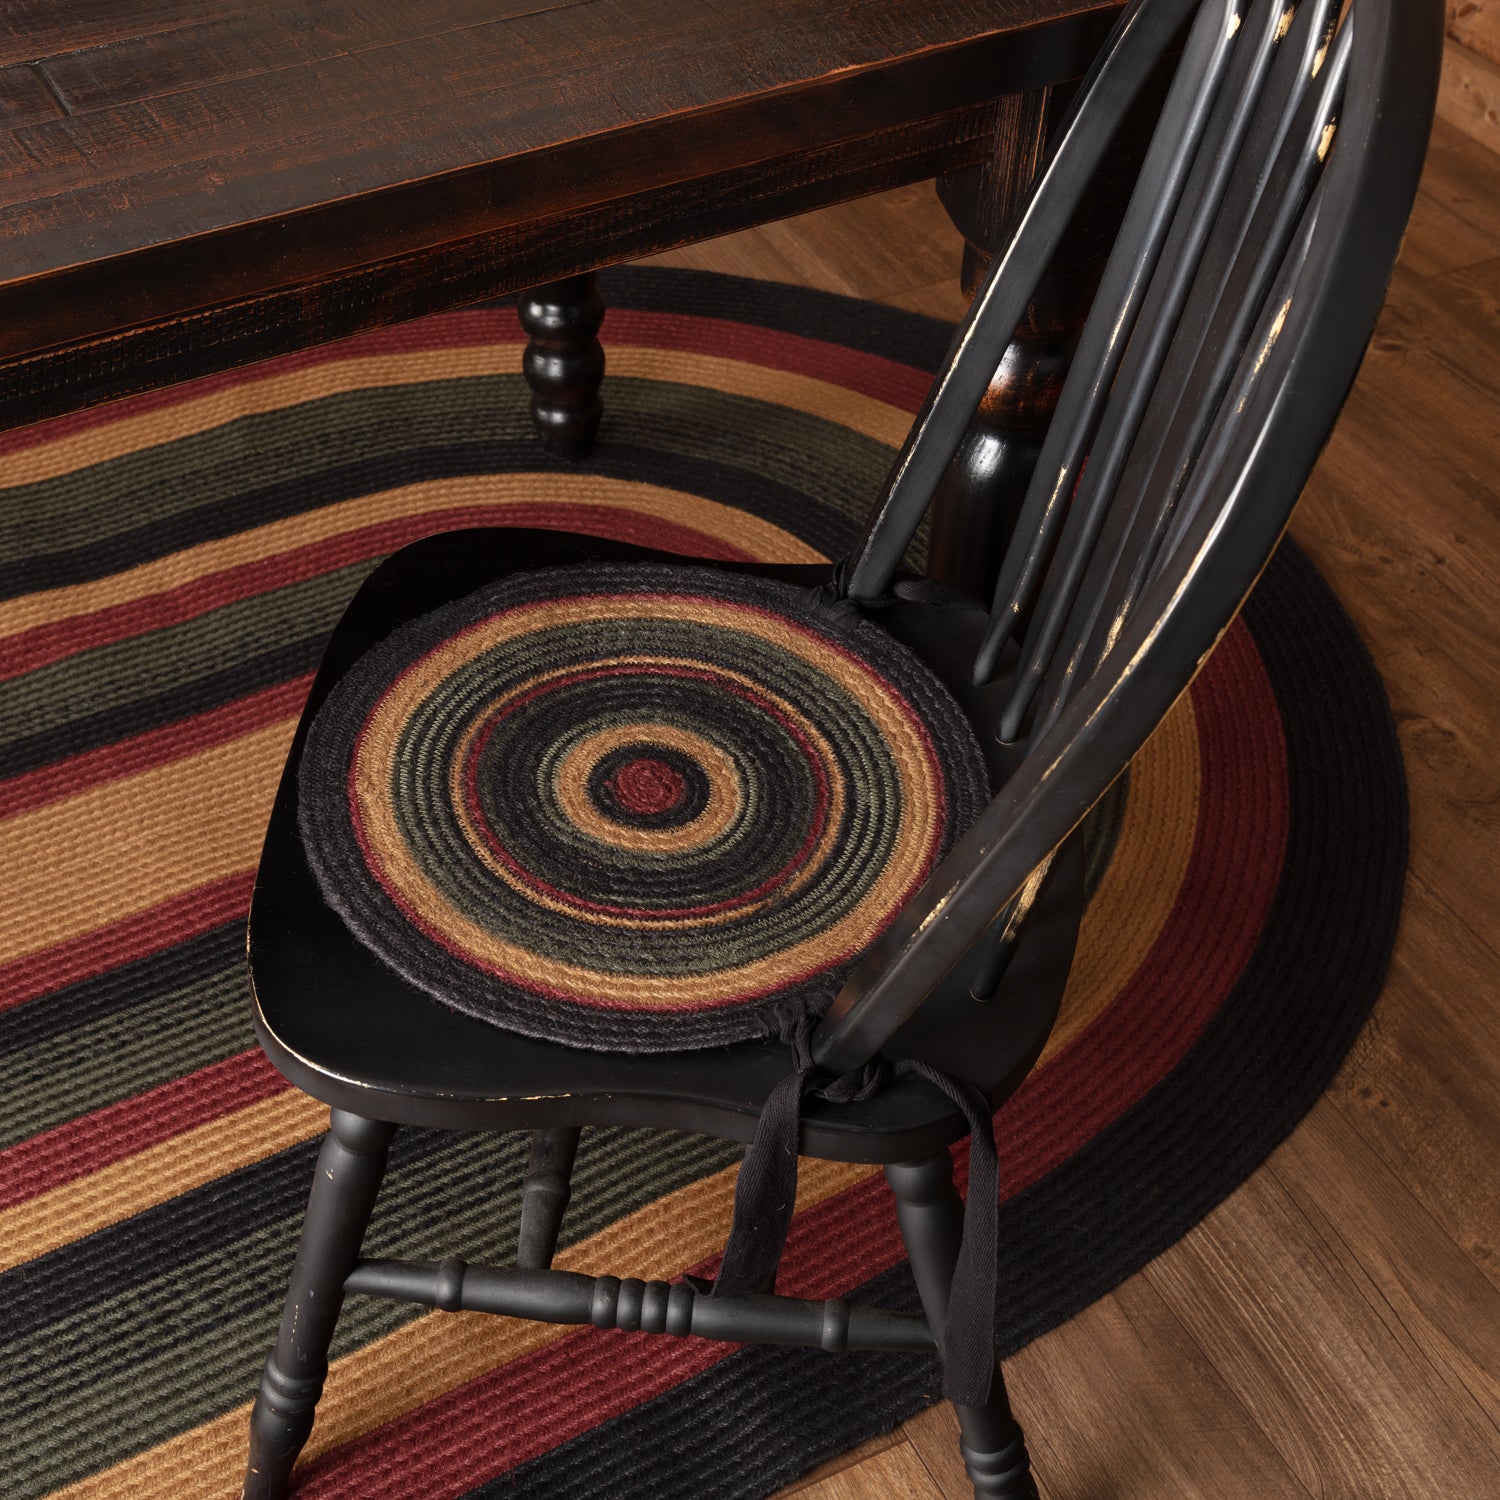 Chair Cushion - Wooden Chairs